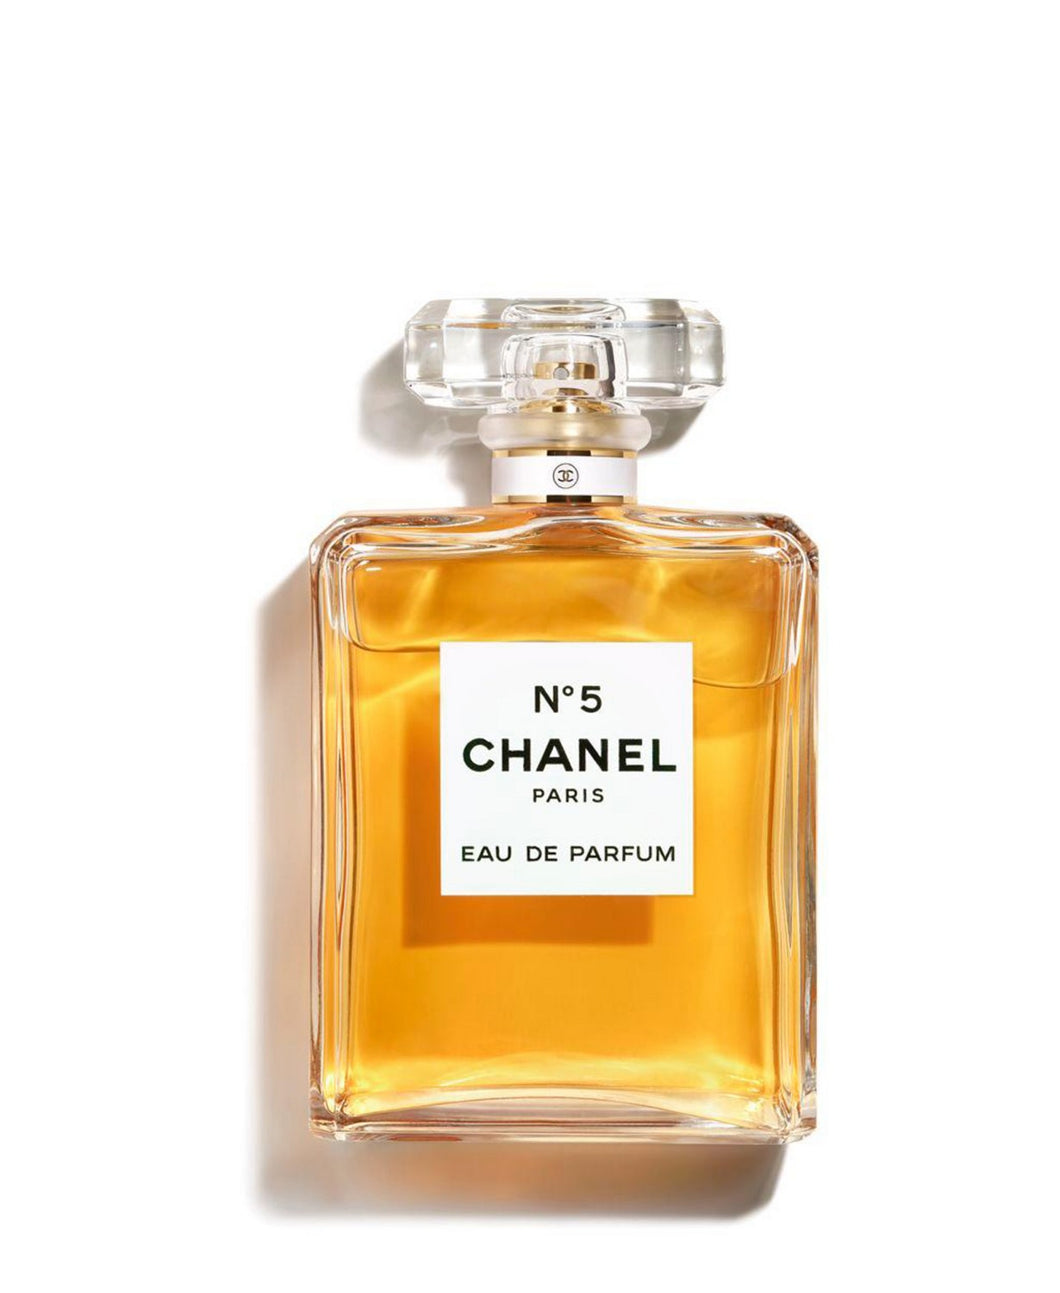 chanel n5 eau de parfum 3.4oz for womans - alwaysspecialgifts.com